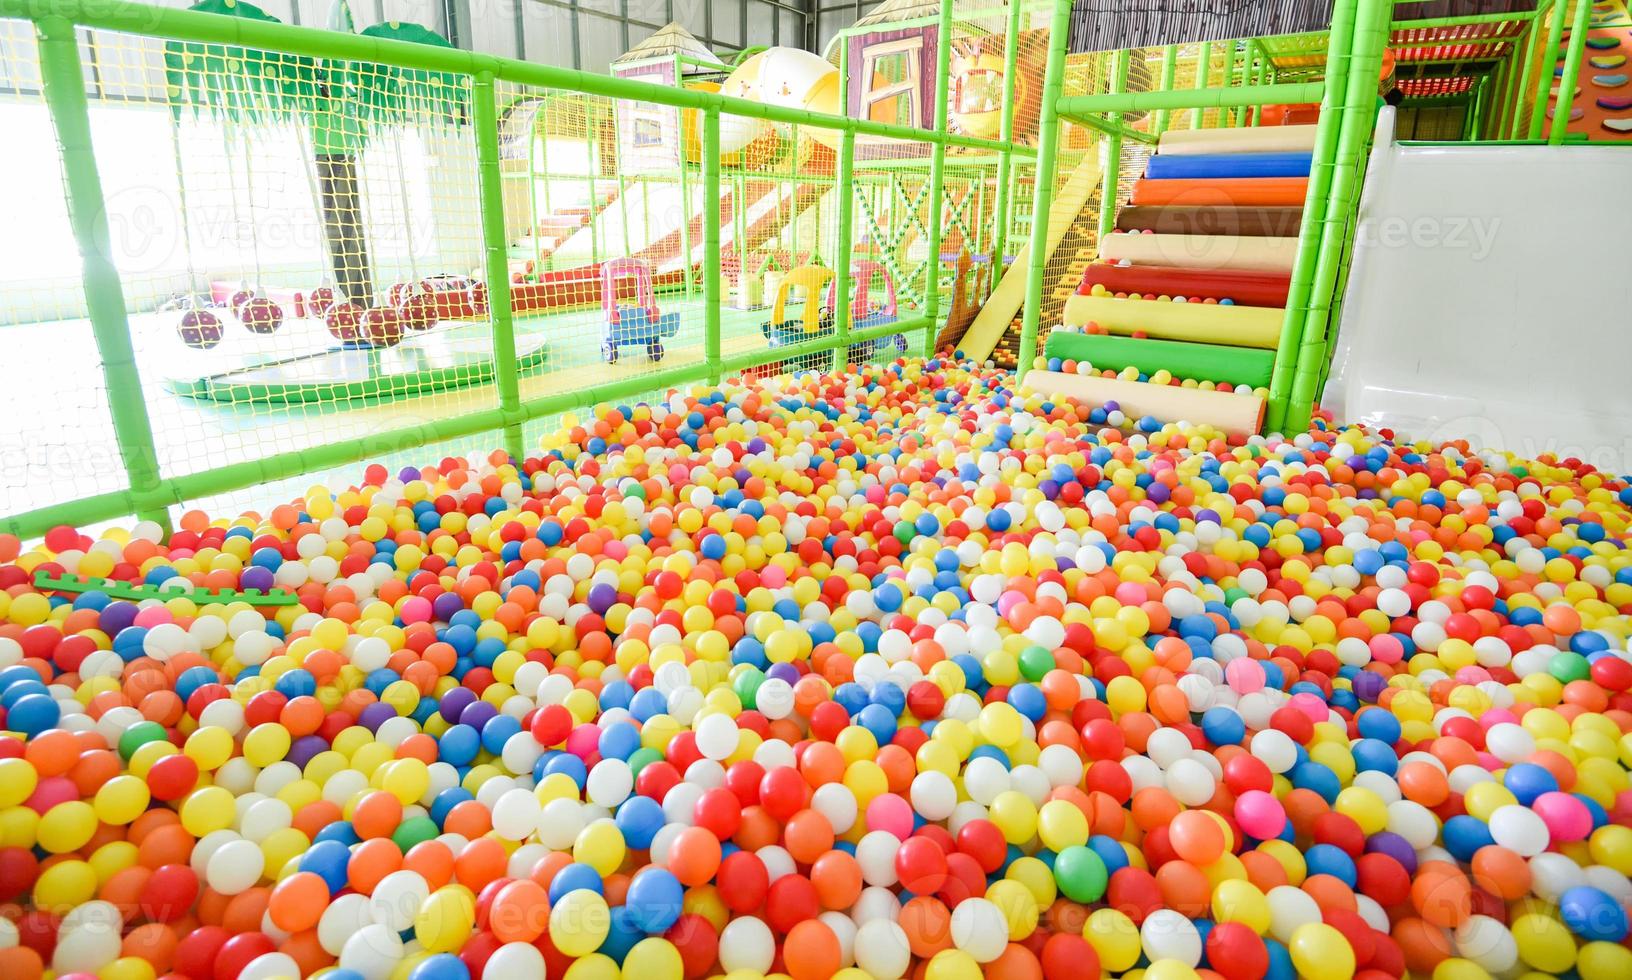 barnlekplats inomhus på nöjespark med färgglada bollar för att leka - inuti den vackra lekplatsen för barnens bollfärgade plast i spelrummet foto